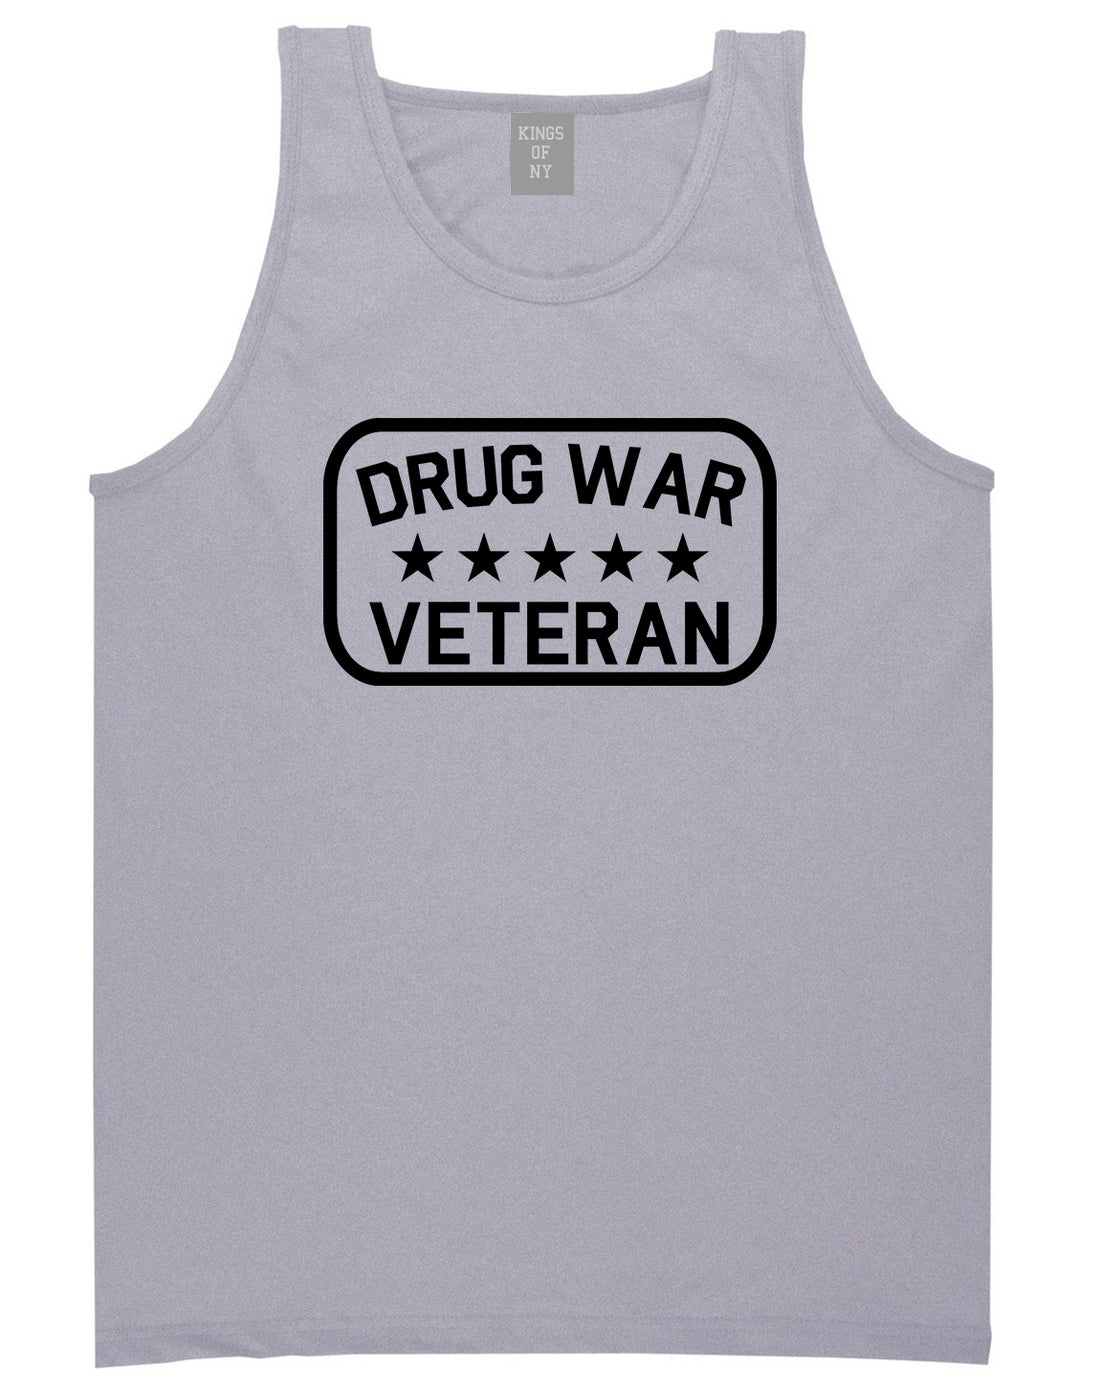 Drug_War_Veteran Mens Grey Tank Top Shirt by Kings Of NY